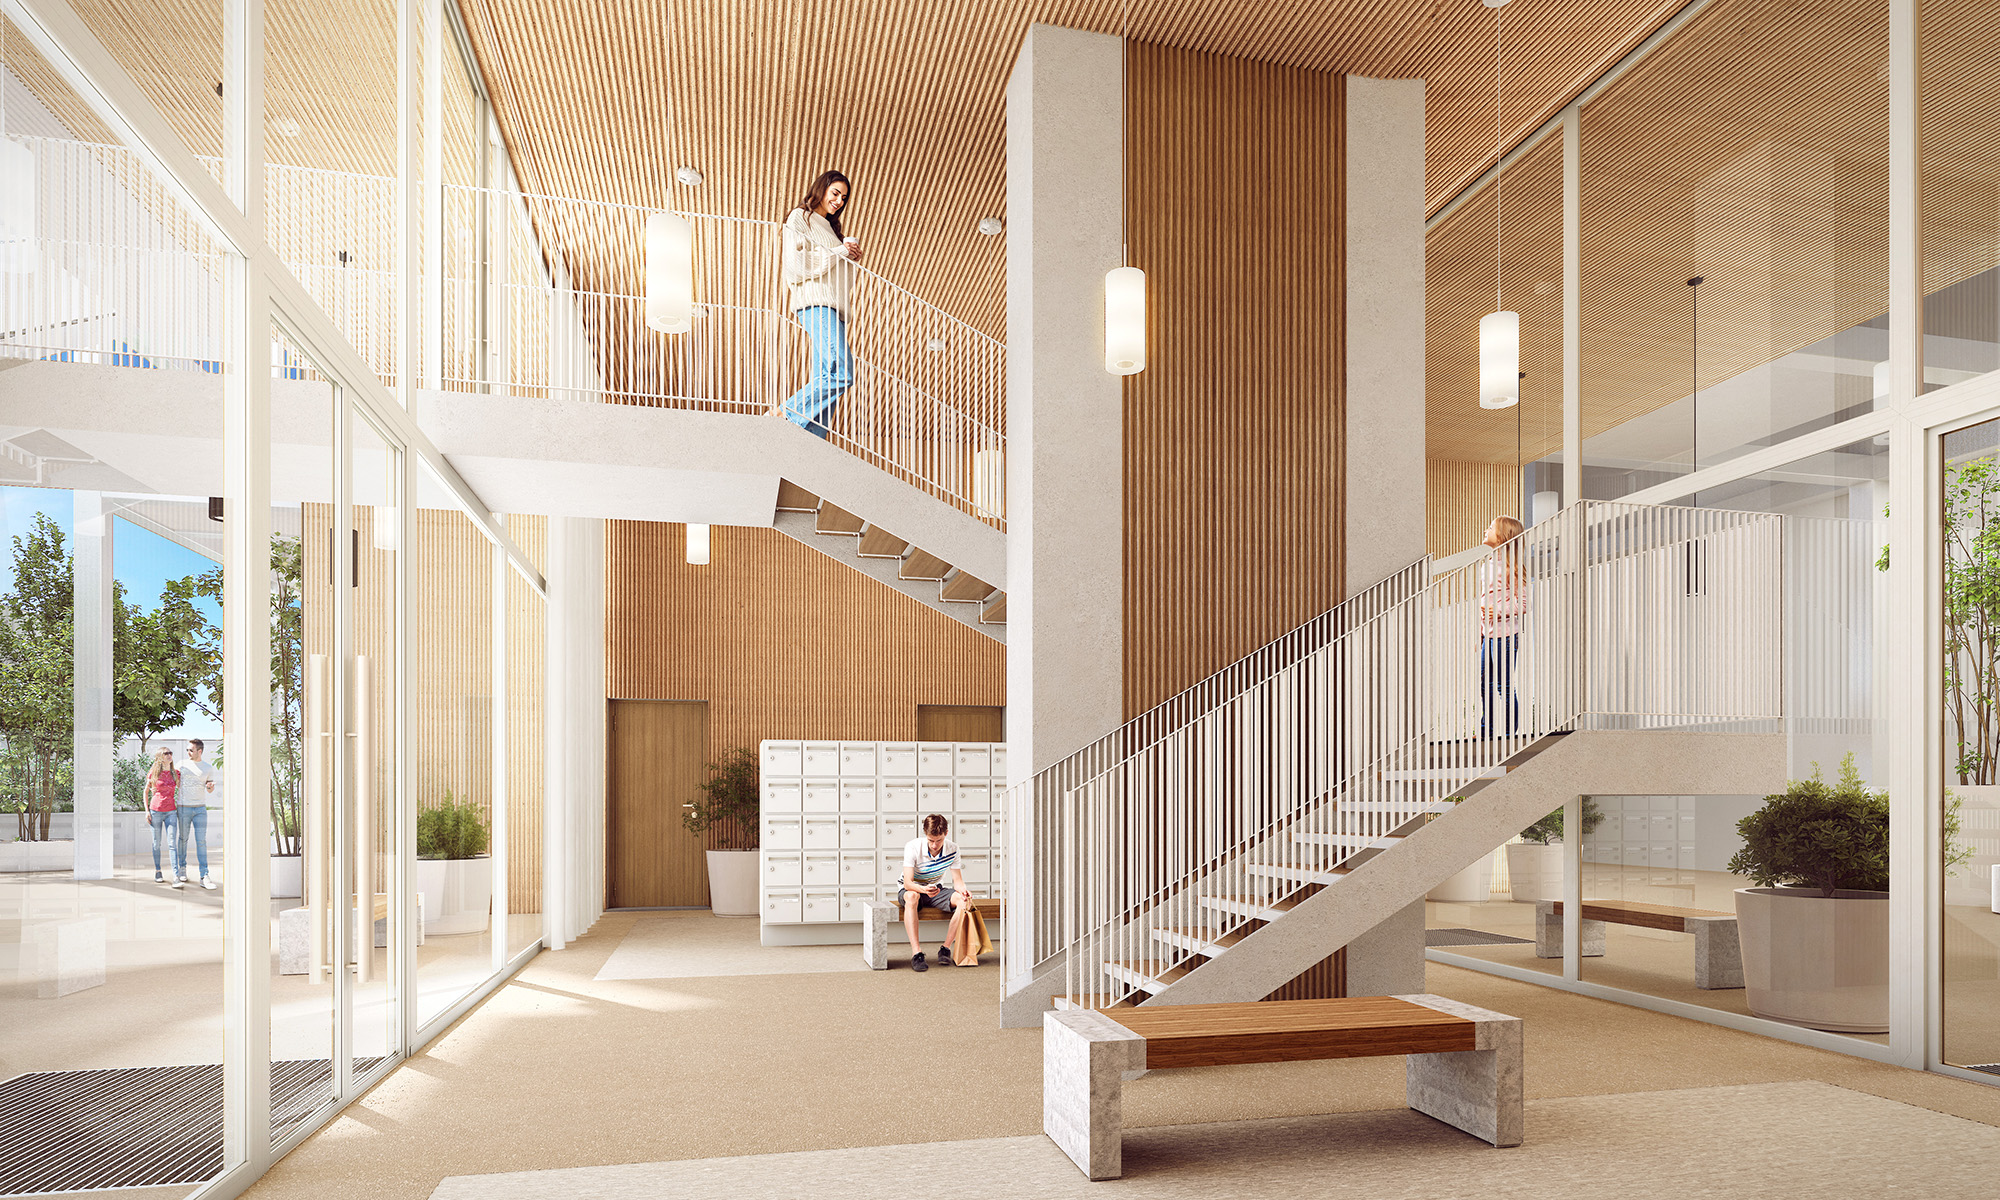 La Serre 白色鋼架外立面也設計有階梯直接通往一樓大廳。